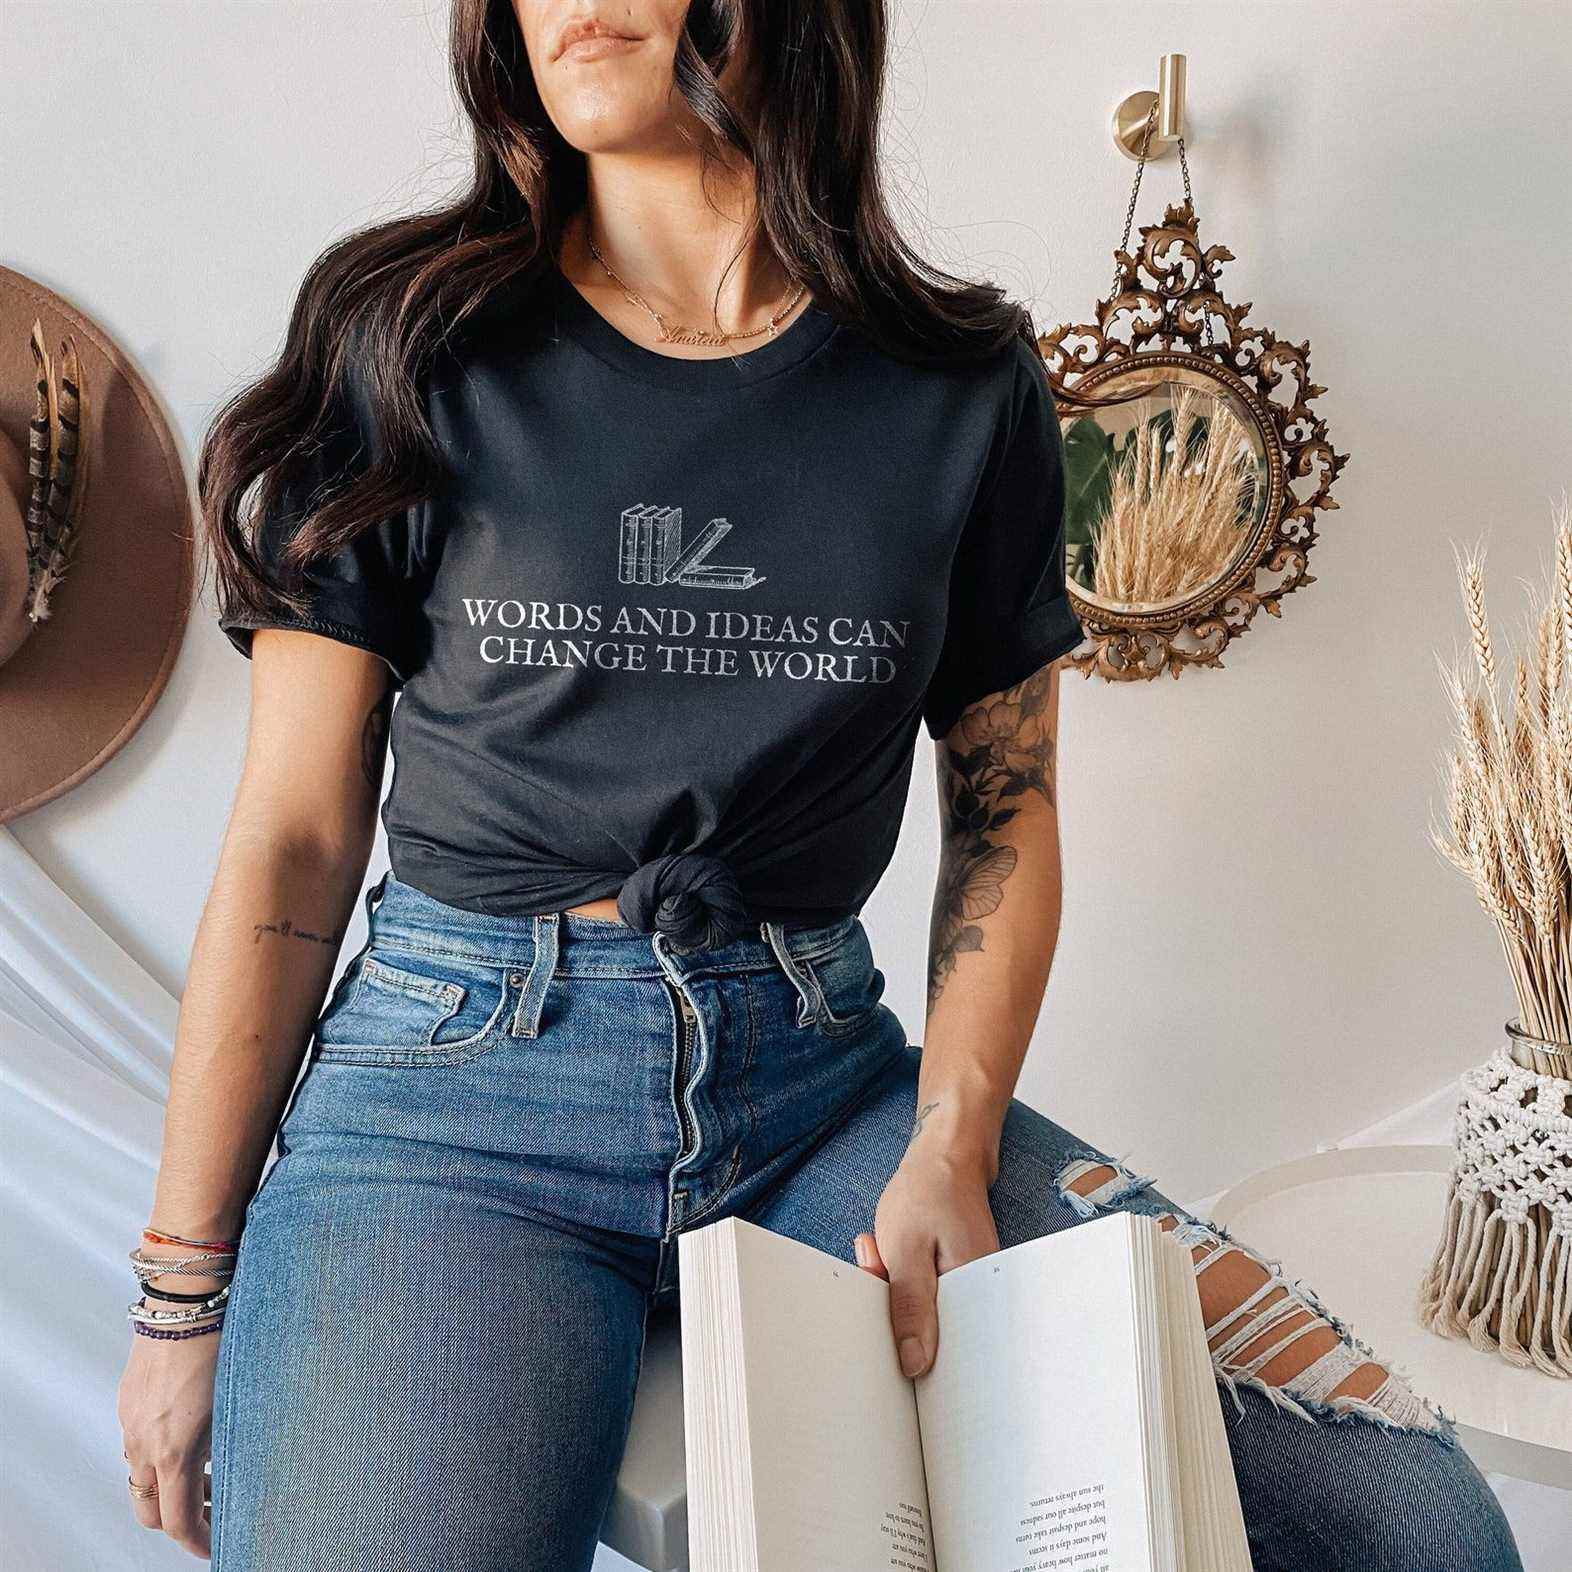 Image d'une femme portant une chemise qui lit "les mots et les idées peuvent changer le monde." La chemise est noire avec des livres dessus. 